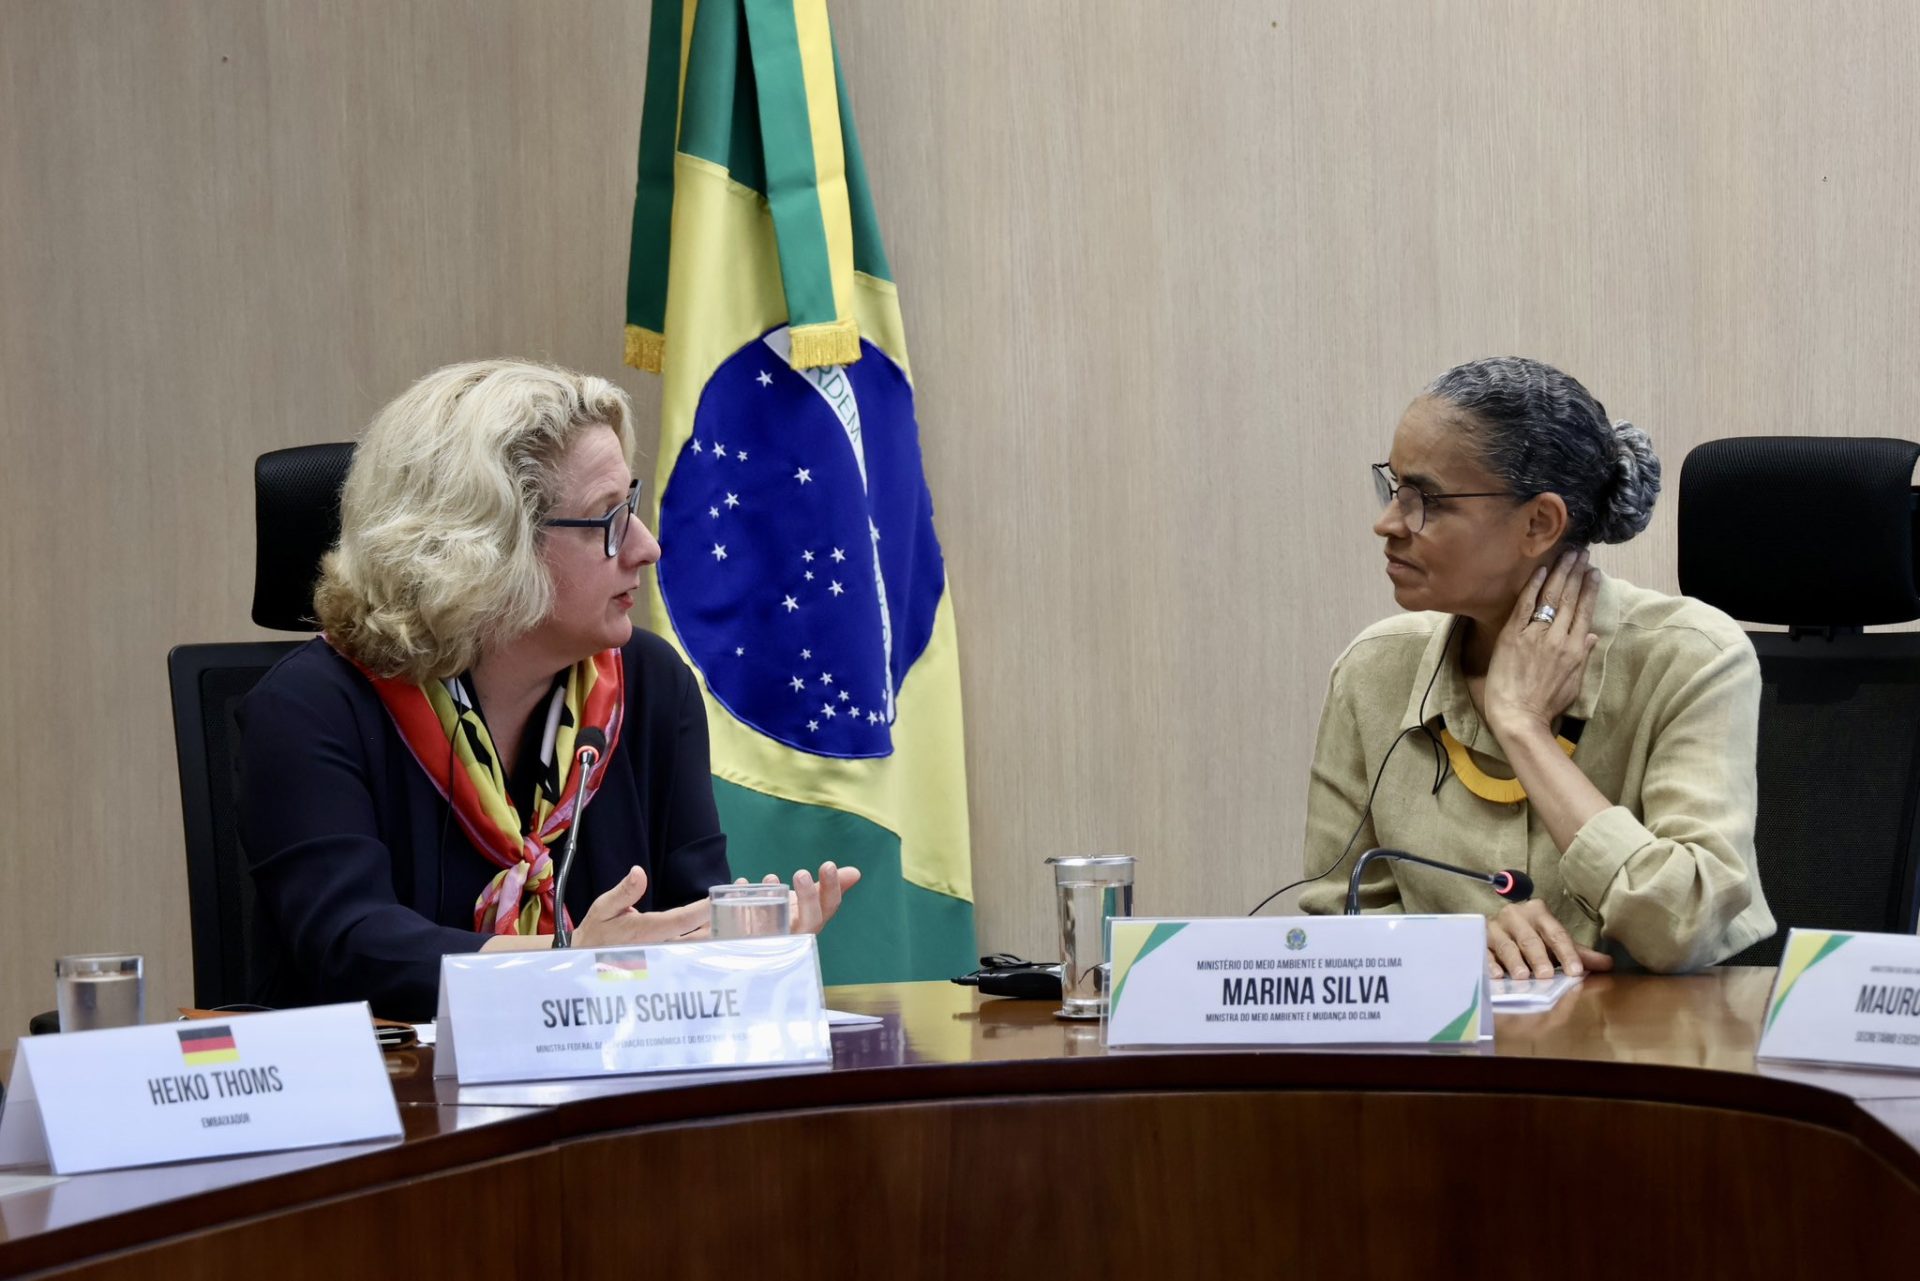 Encontro entre ministra da Alemanha e Marina Silva ocorreu nesta segunda (30) - Foto: Reprodução/Twitter @SvenjaSchulze68